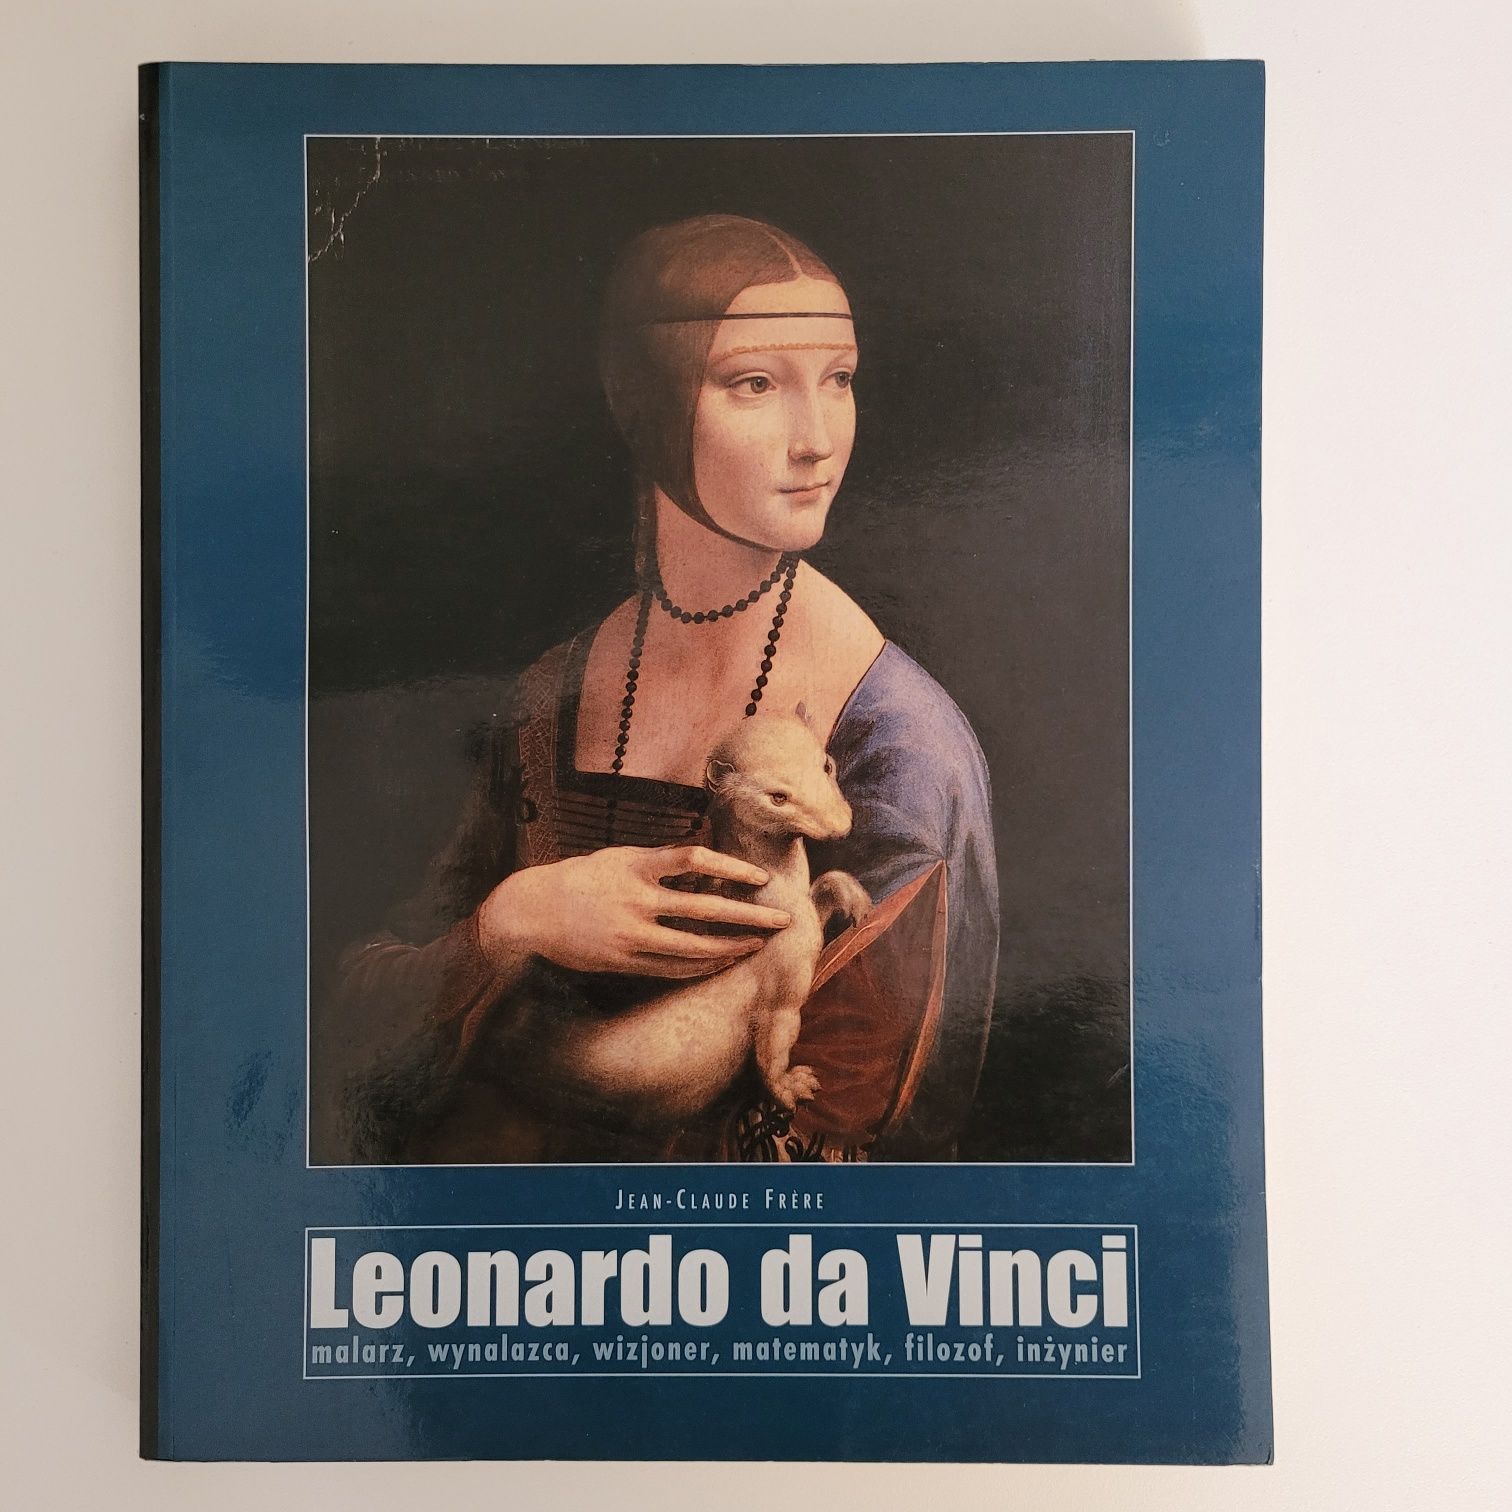 Leonardo da Vinci album